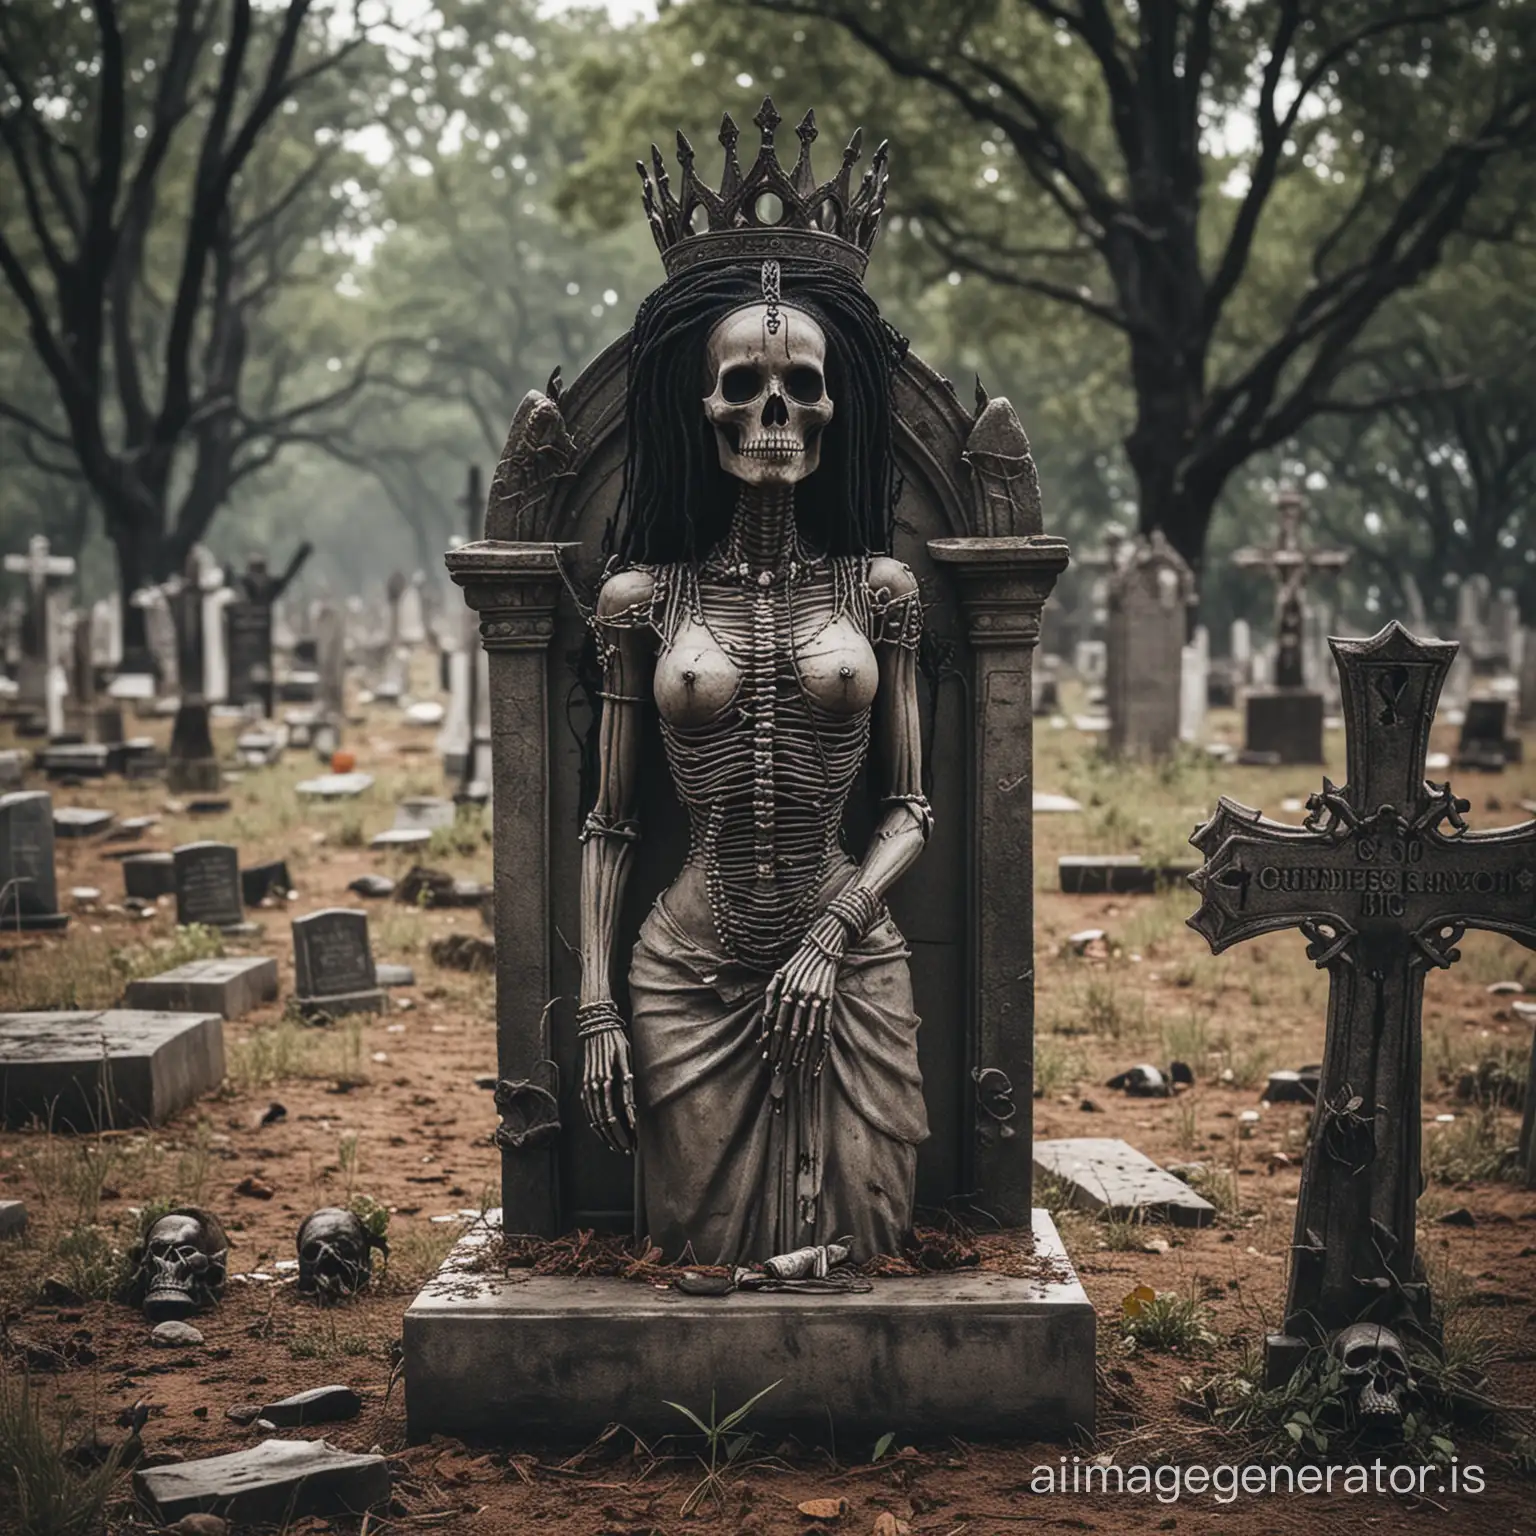 Enigmatic-Voodoo-Queen-amidst-Haunting-Graveyard